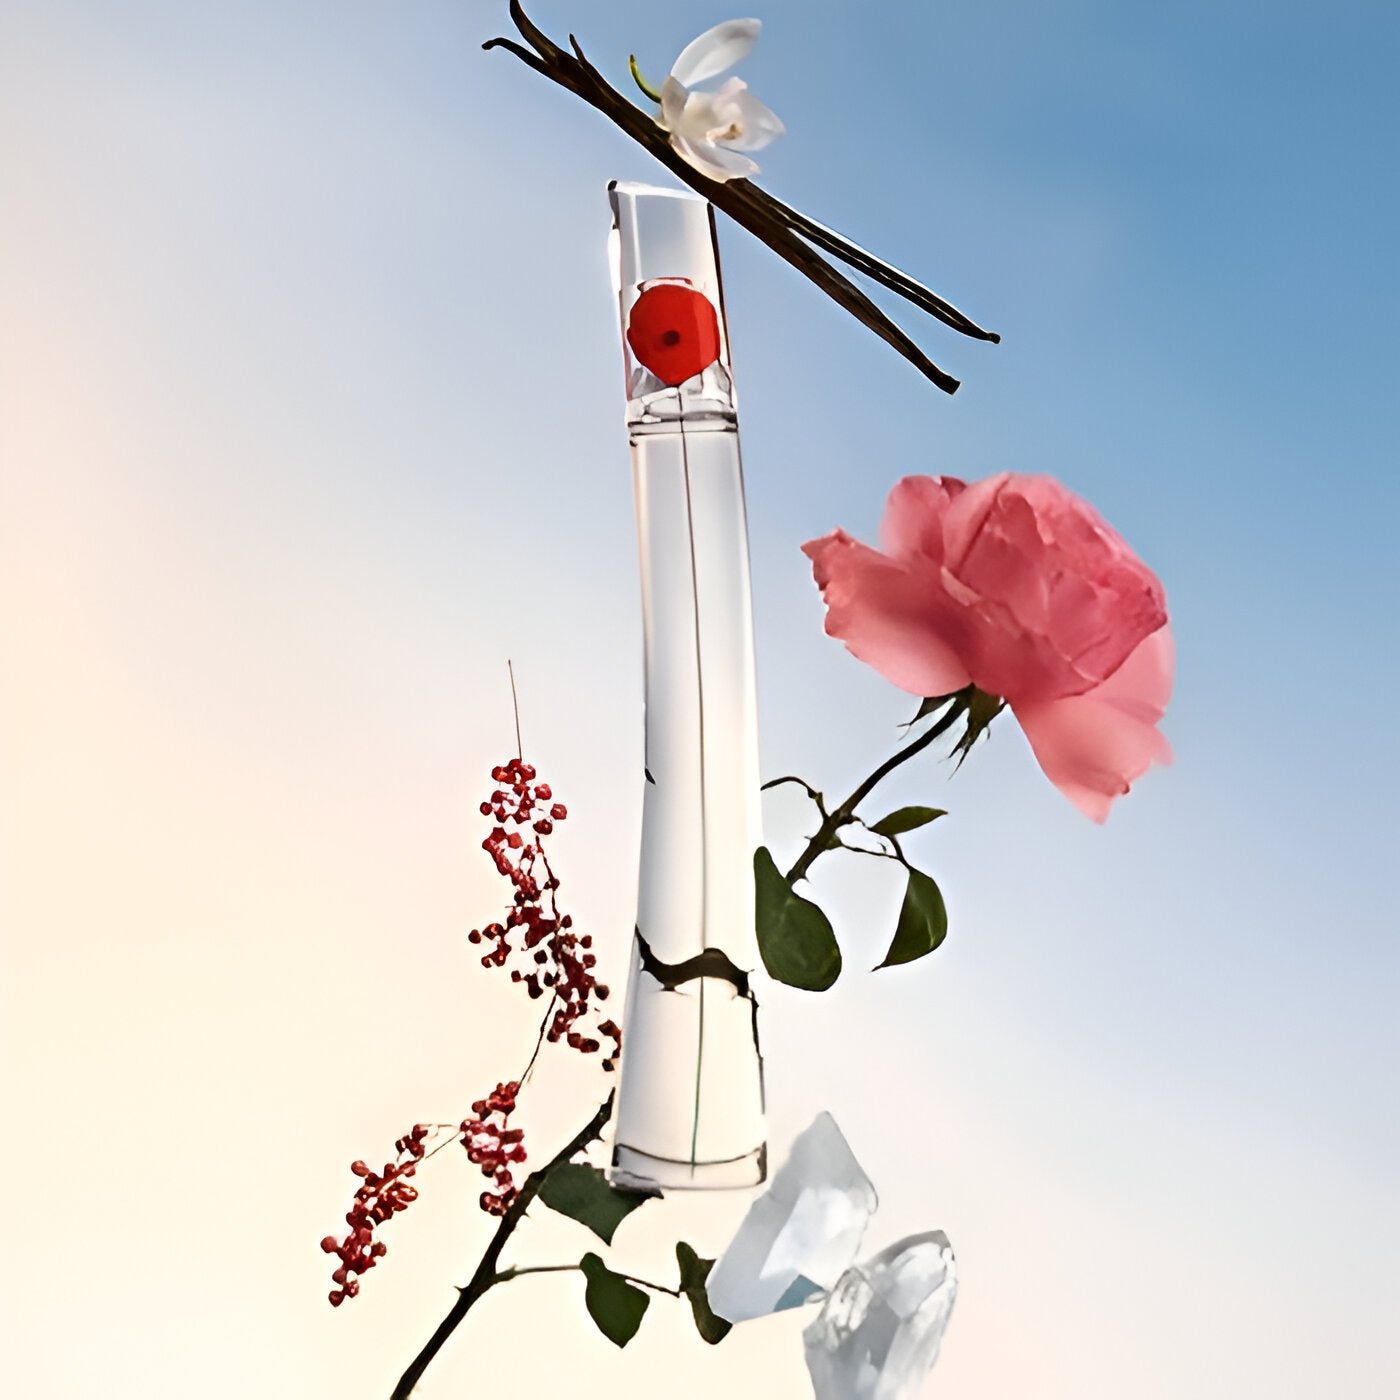 Kenzo Flower By Kenzo EDT | My Perfume Shop Australia